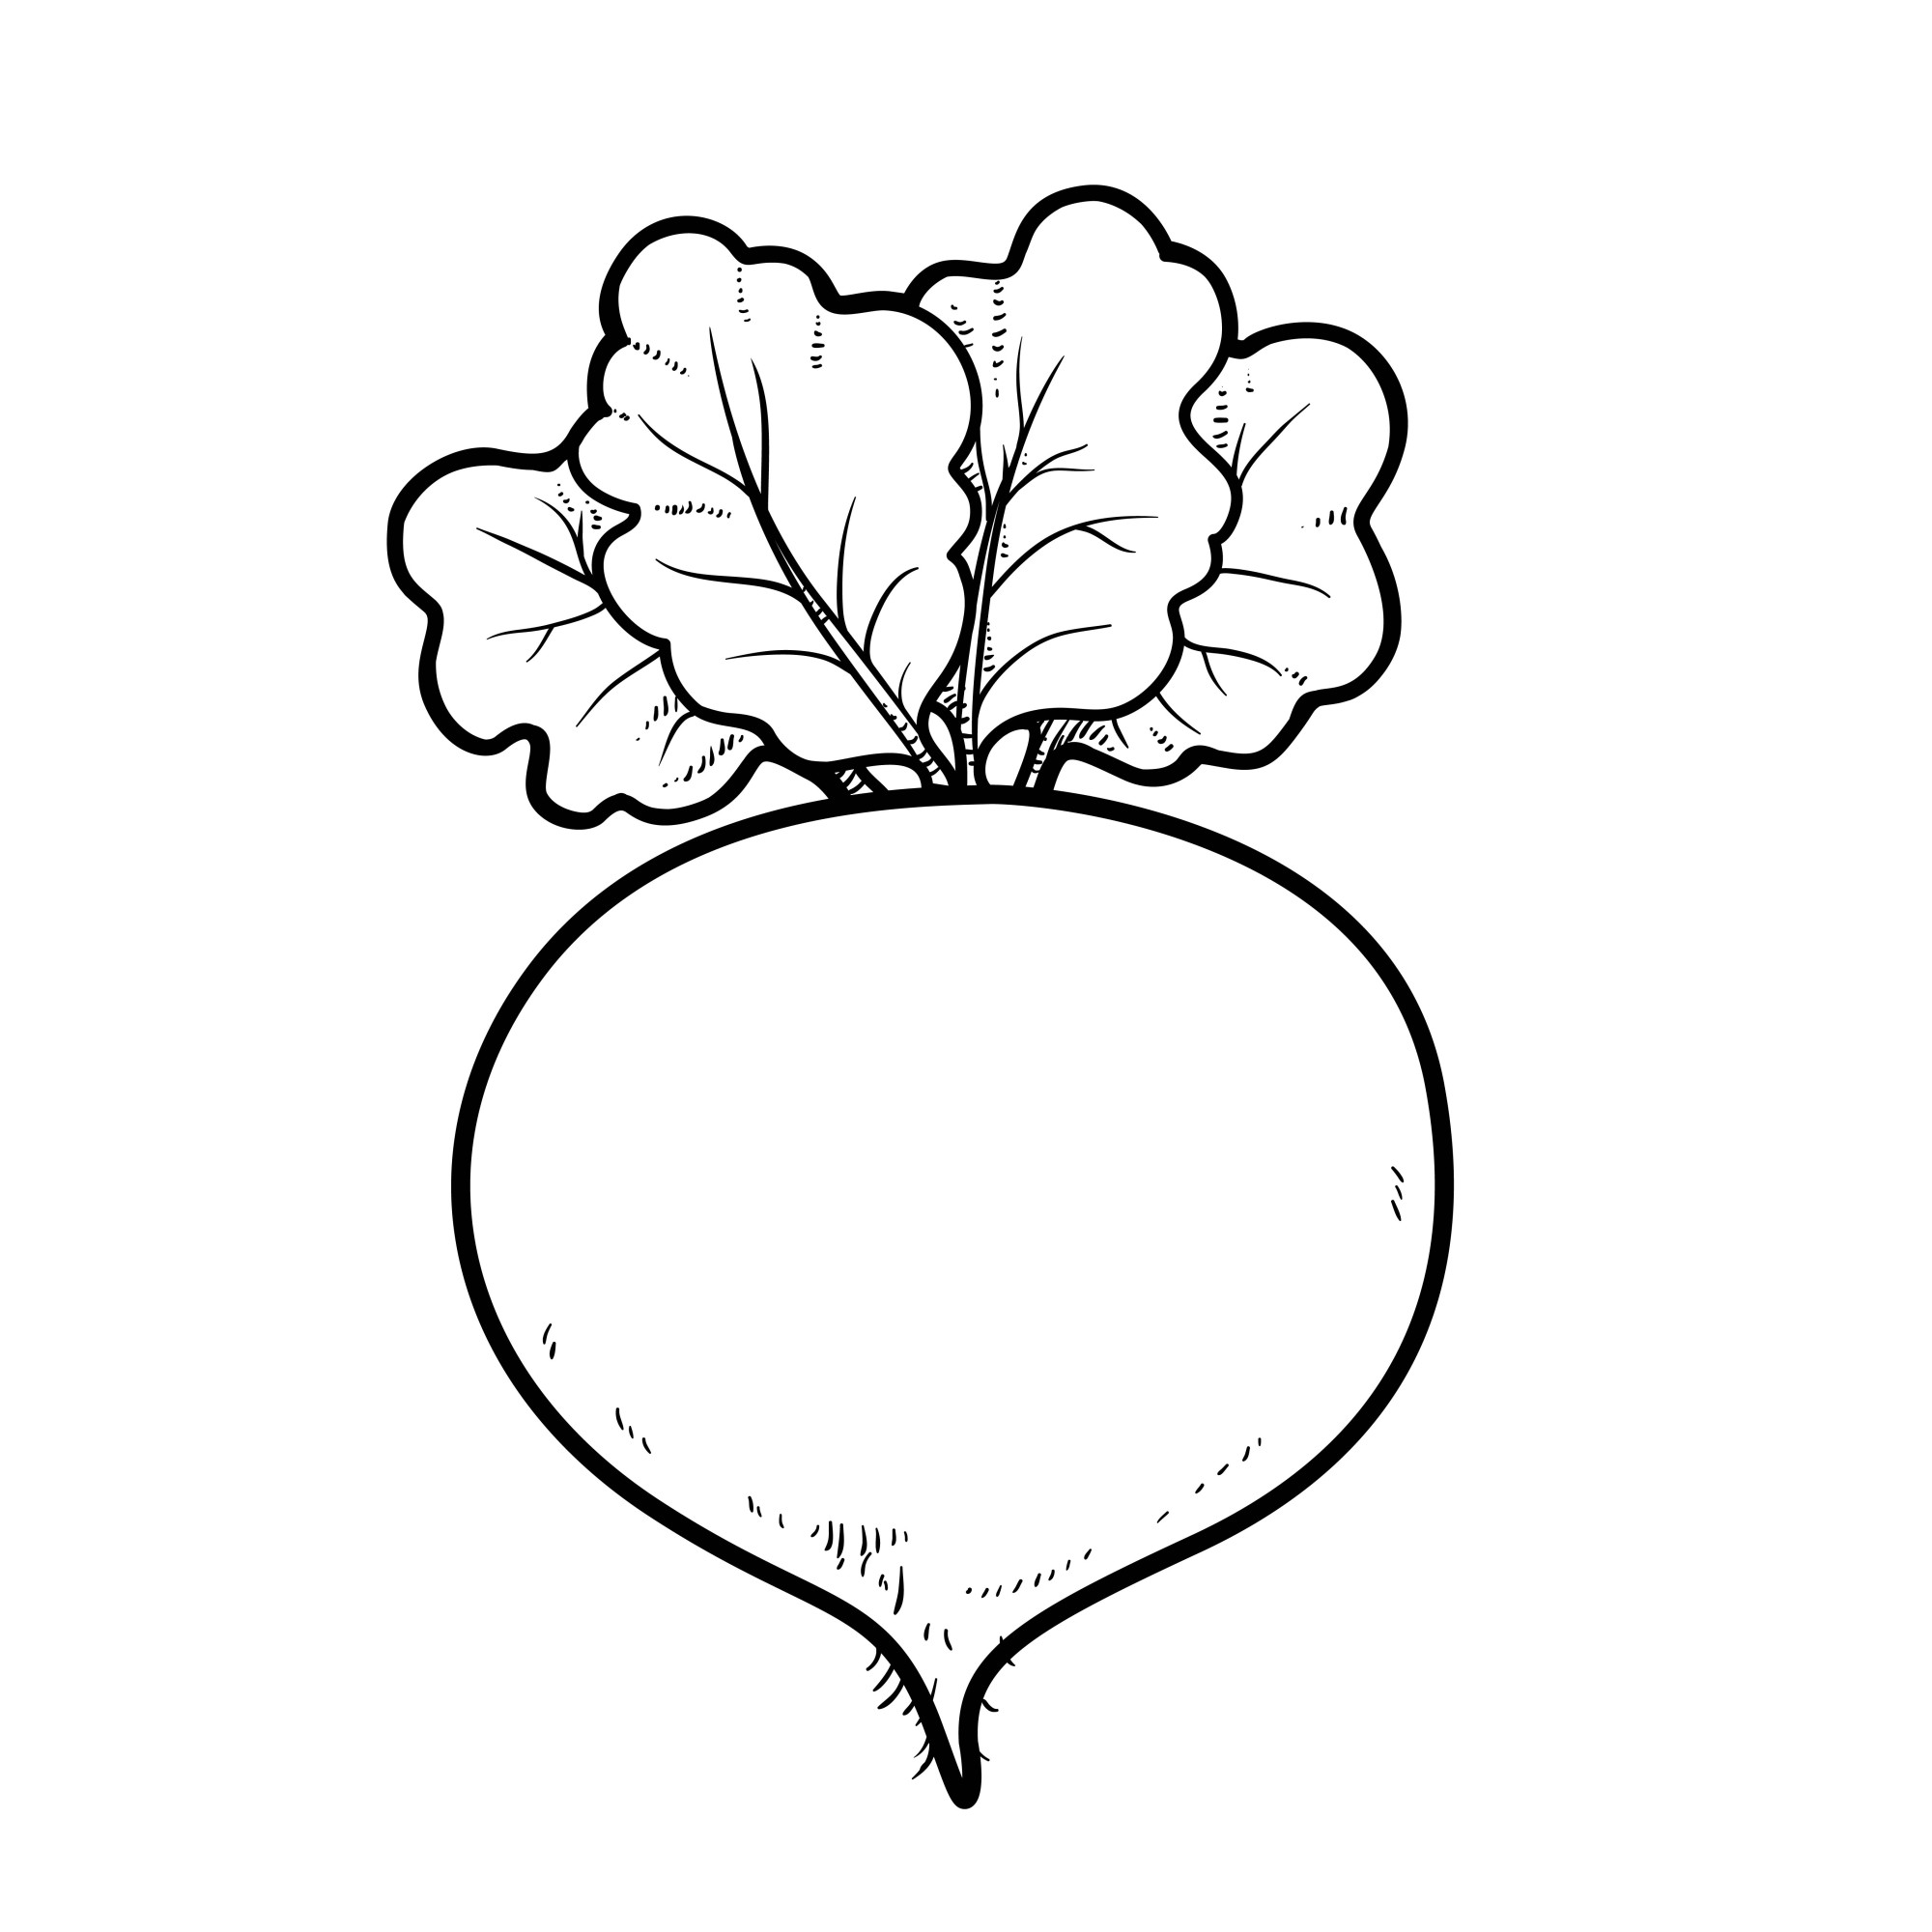 Раскраска для детей: корнеплод свекла с ботвой